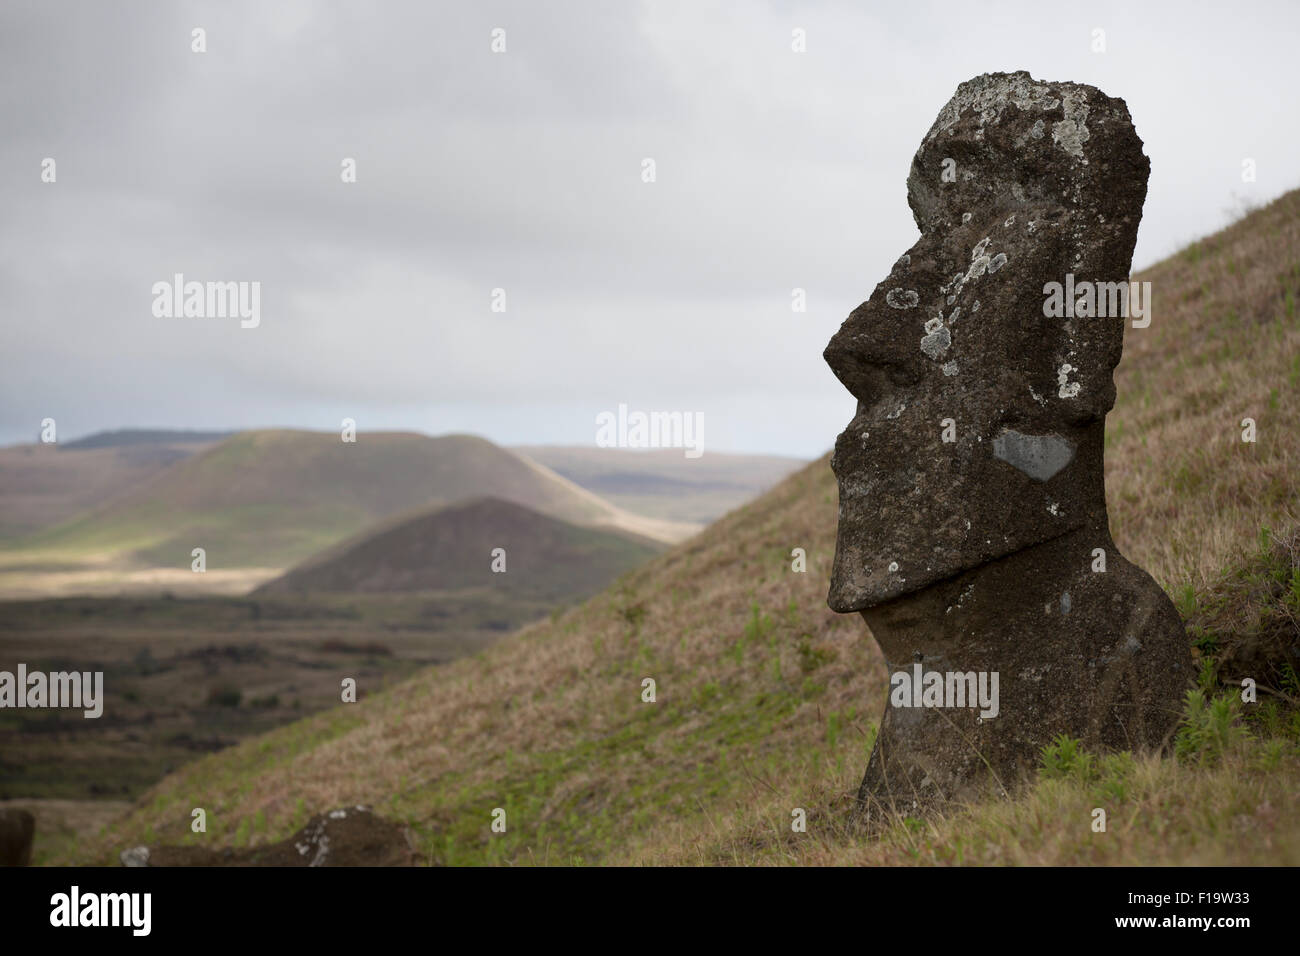 La cava, Rano Raraku, Isola di Pasqua aka Rapa Nui, Cile. Sito storico, collina vulcanica dove moai sono stati scolpiti. Foto Stock